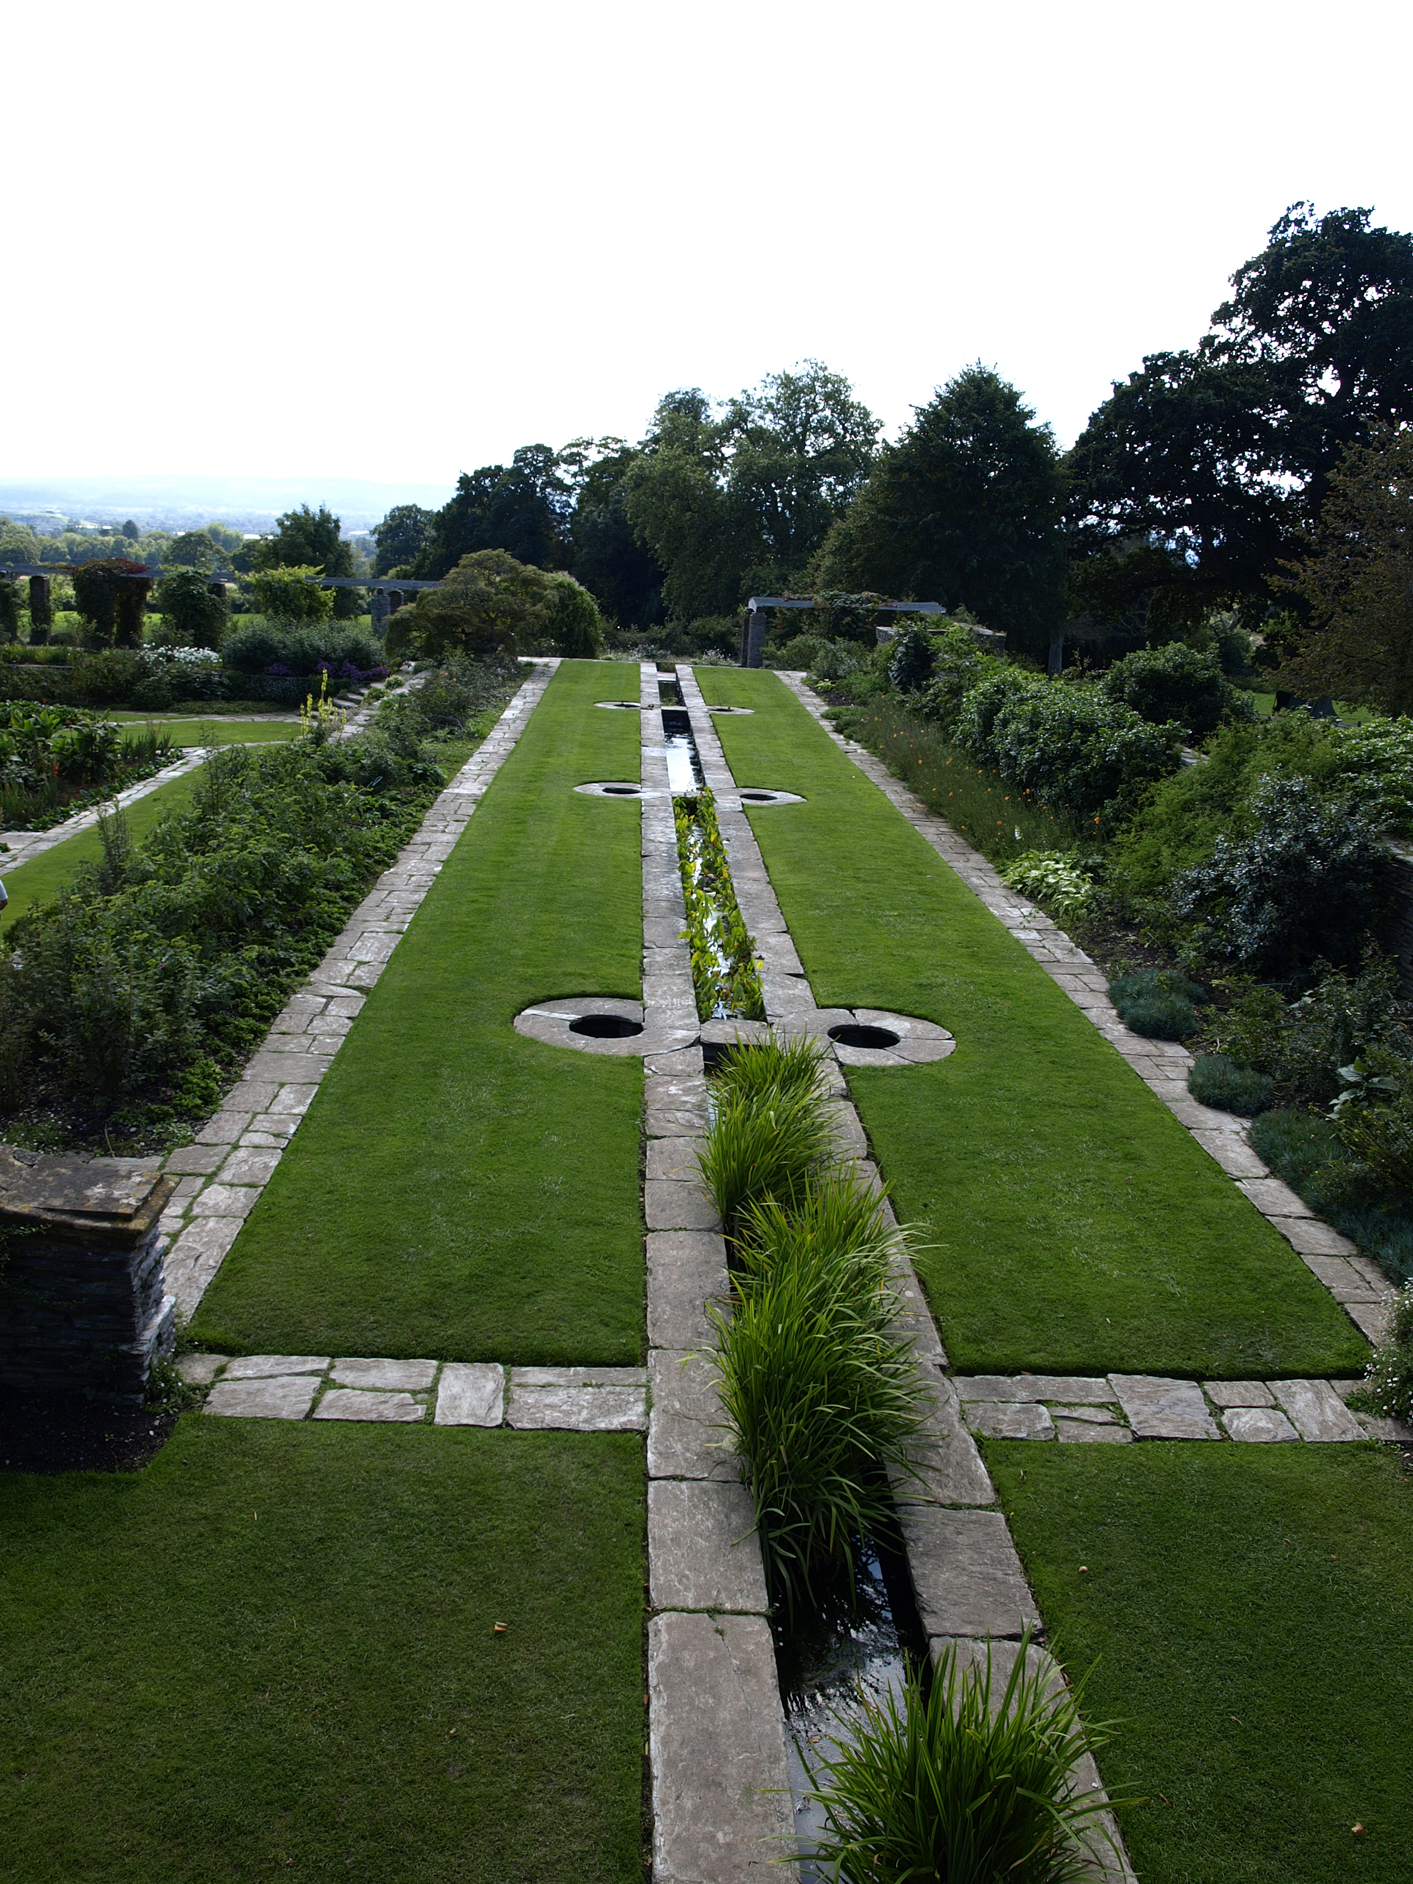 Hestercombe Gardens, Taunton, Somerset, UK, completed in 1908. [Scott Zona/CC] 